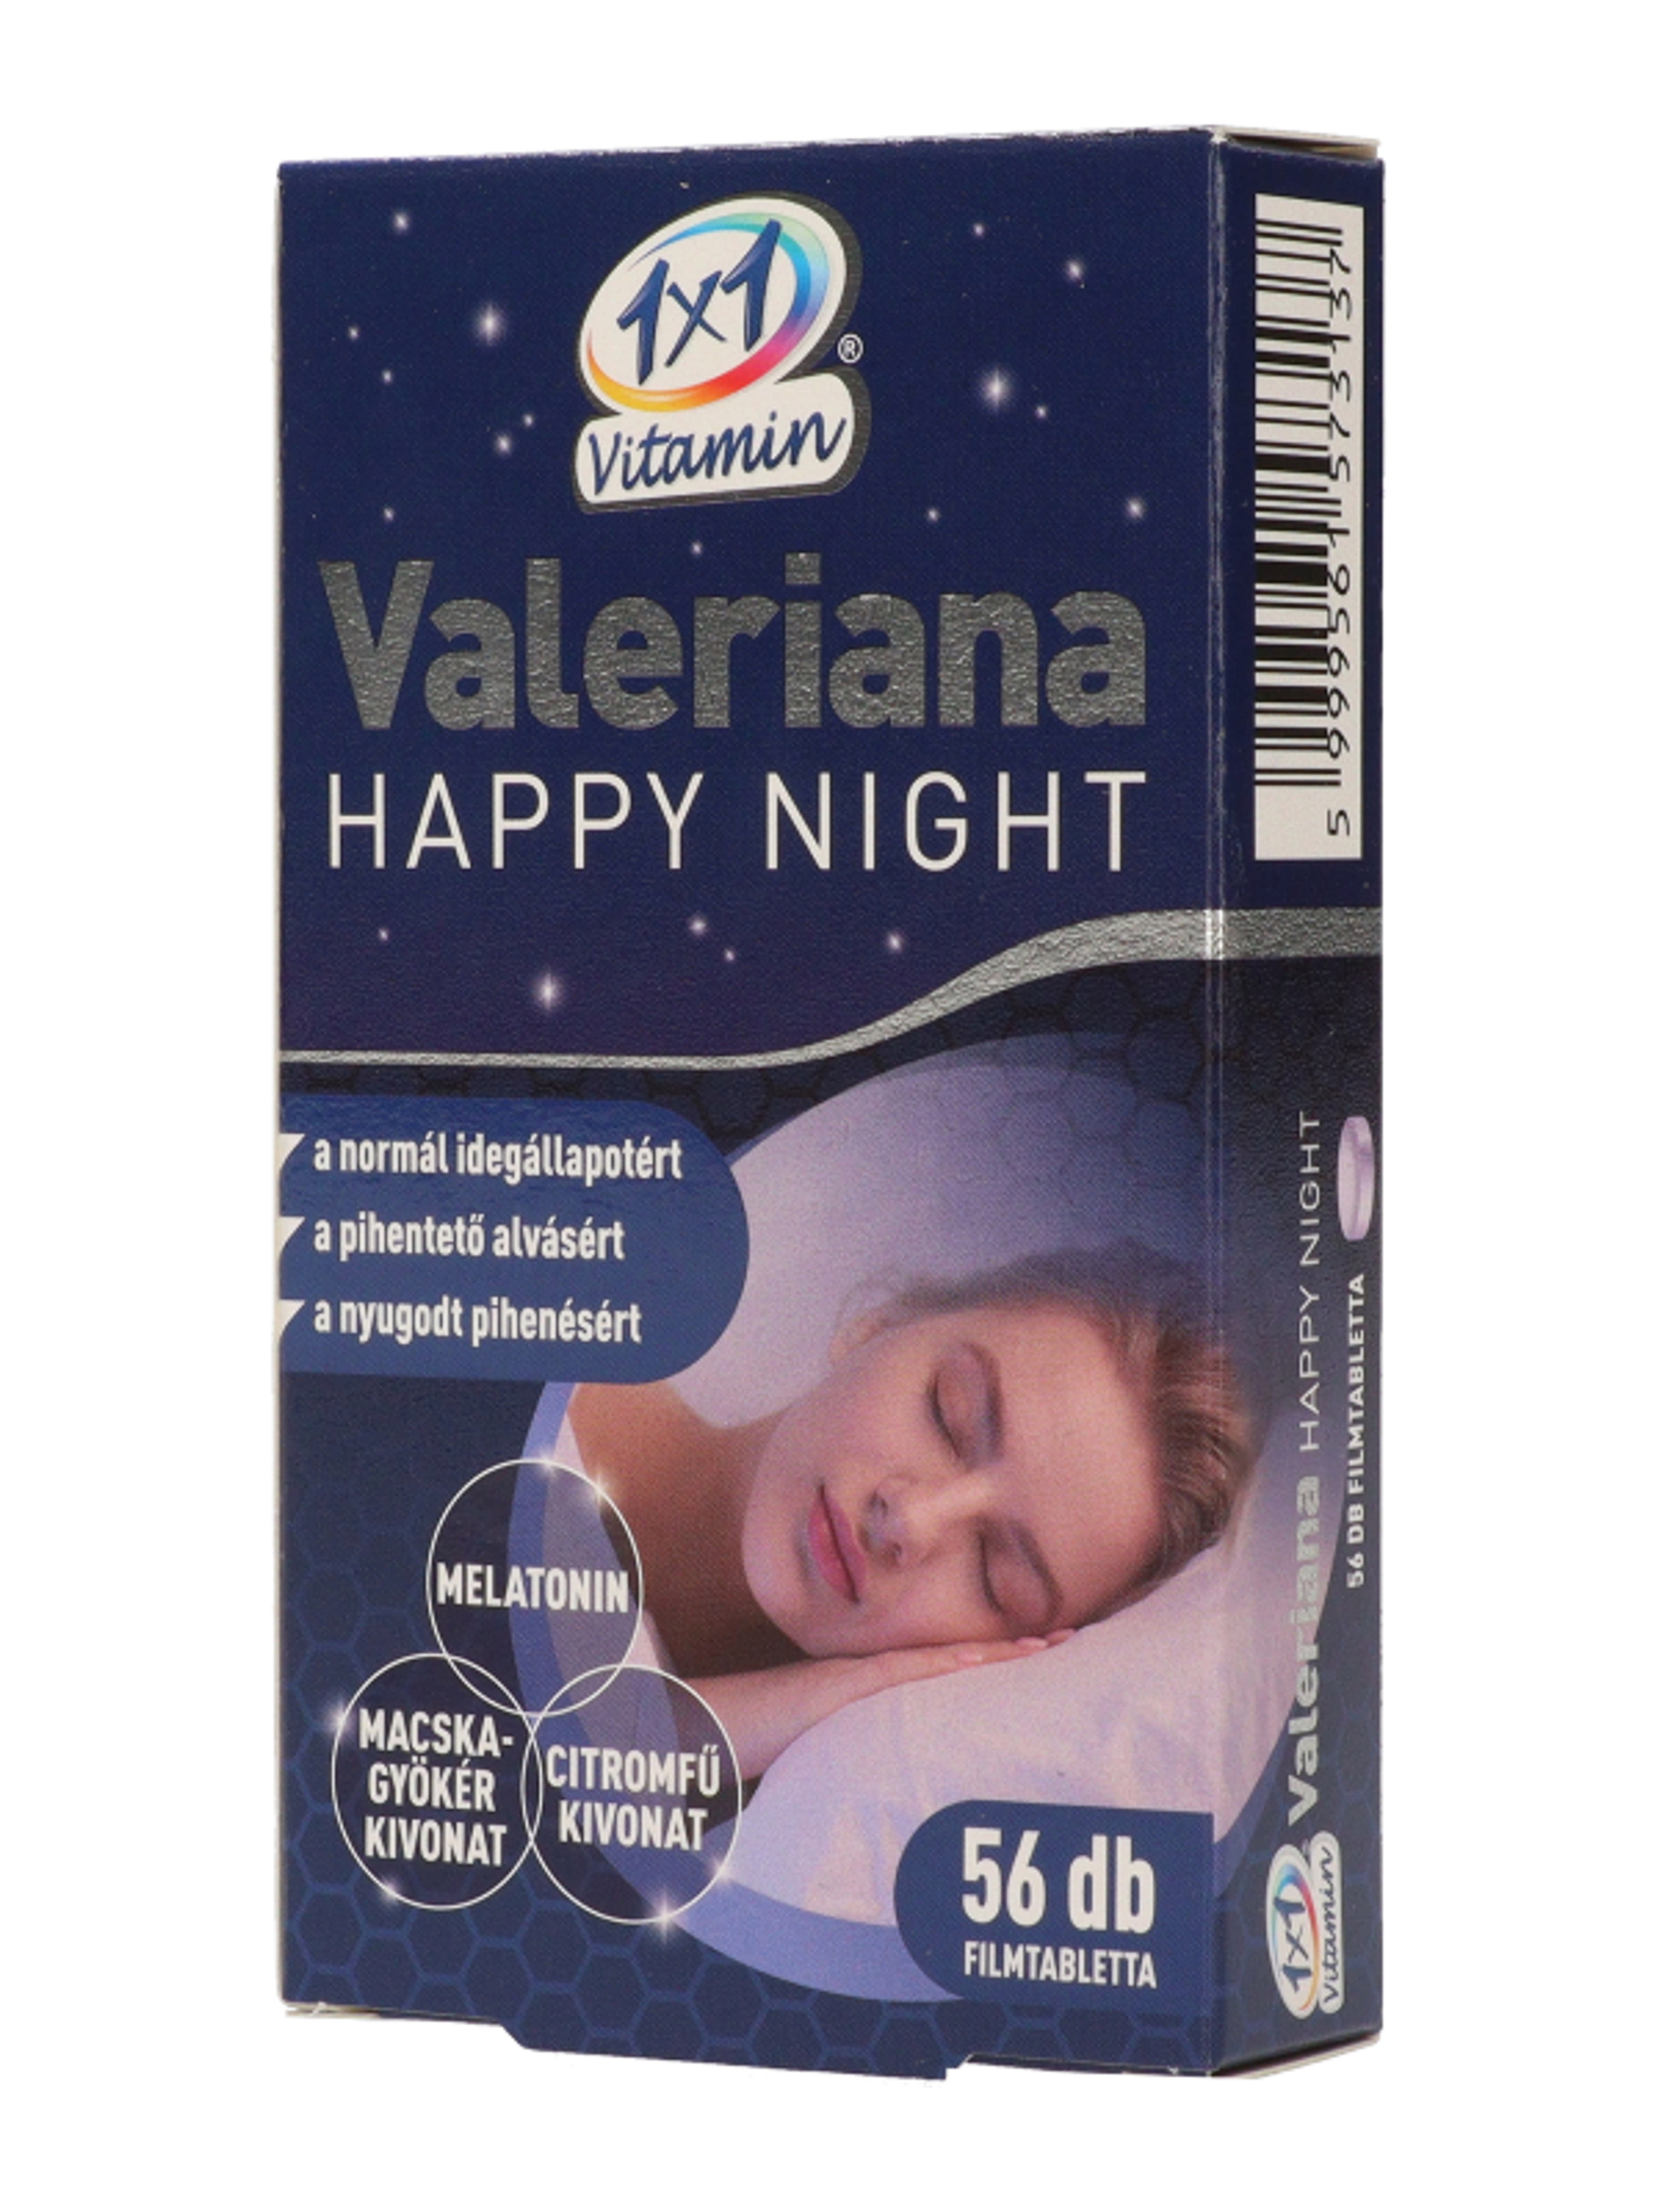 1x1 Vitamin Valeriana Happy Night filmtabletta - 56 db-3